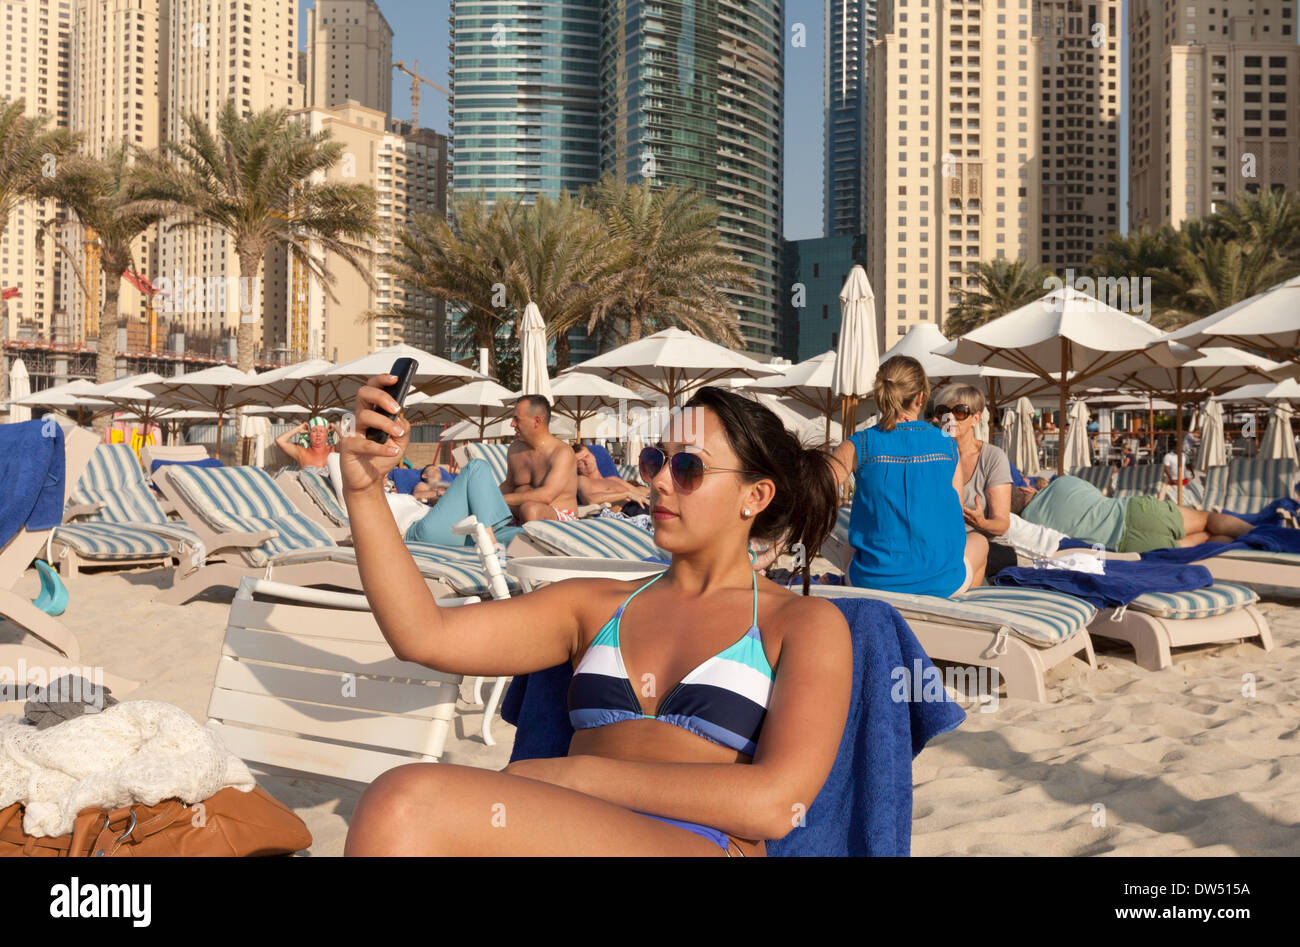 Alter junge Frau im Alter von 20 s Selfie fotografieren auf dem Strand, Jumeirah Beach, Dubai, Vereinigte Arabische Emirate, VAE Naher Osten Stockfoto